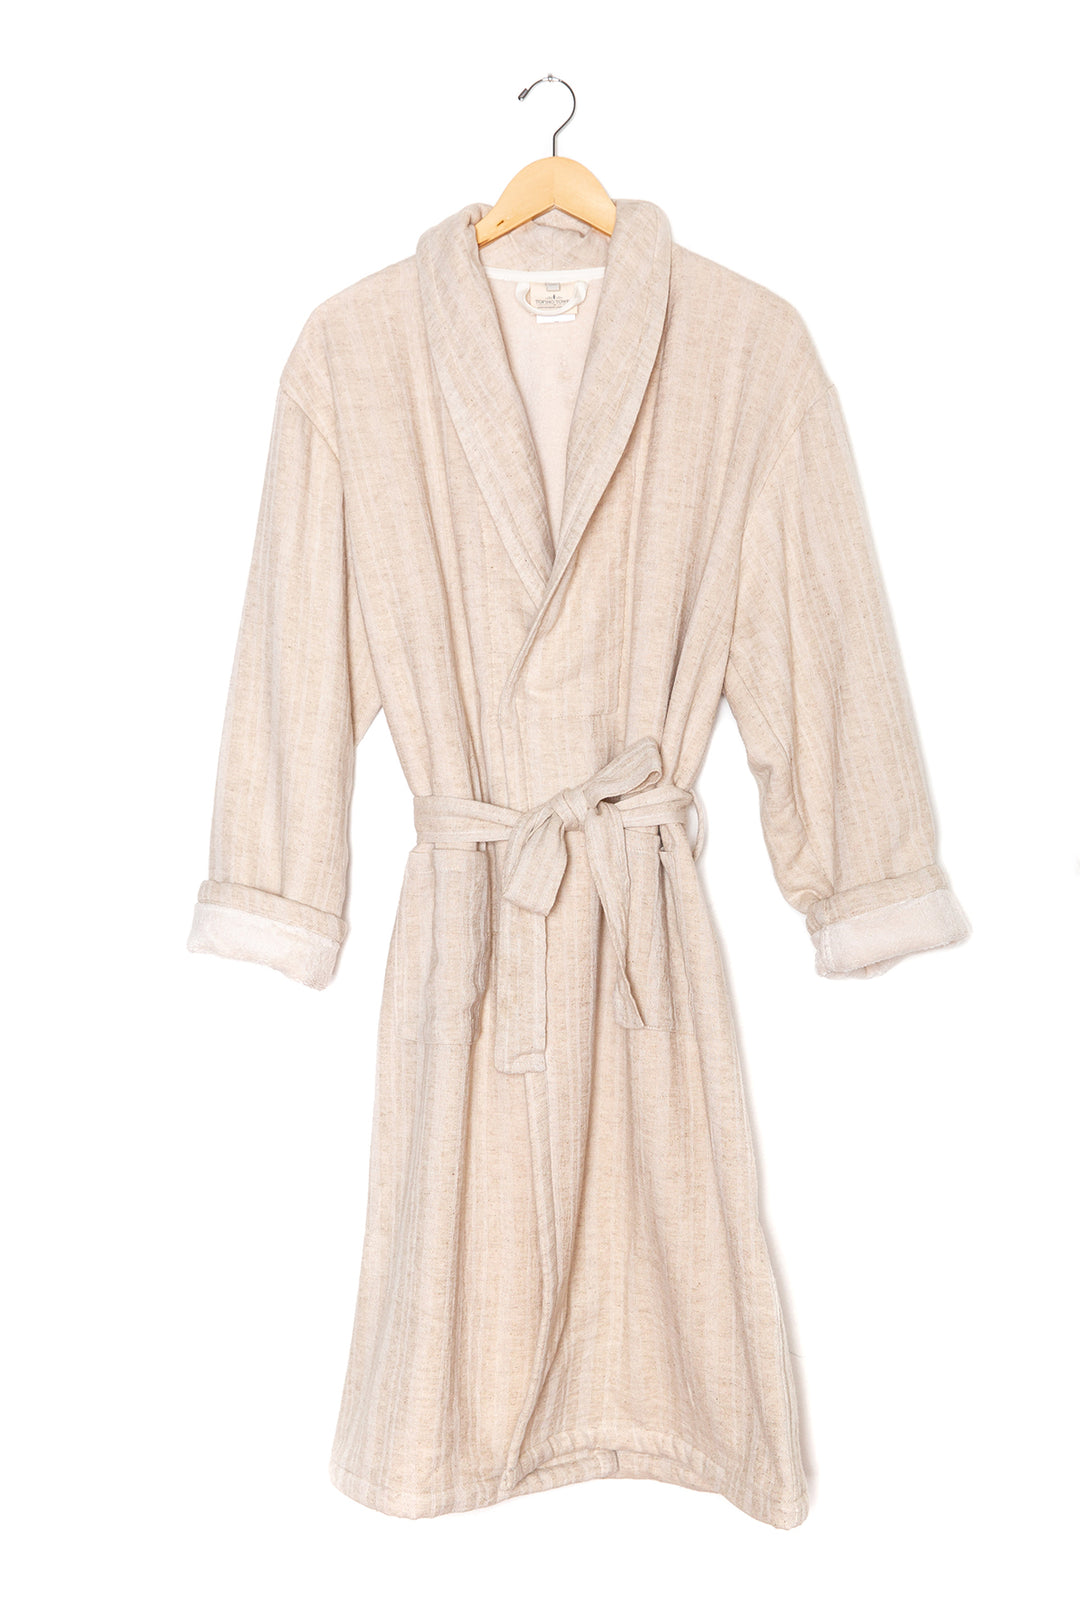 THE CELESTE <br> Luxe Terry Bath Robe